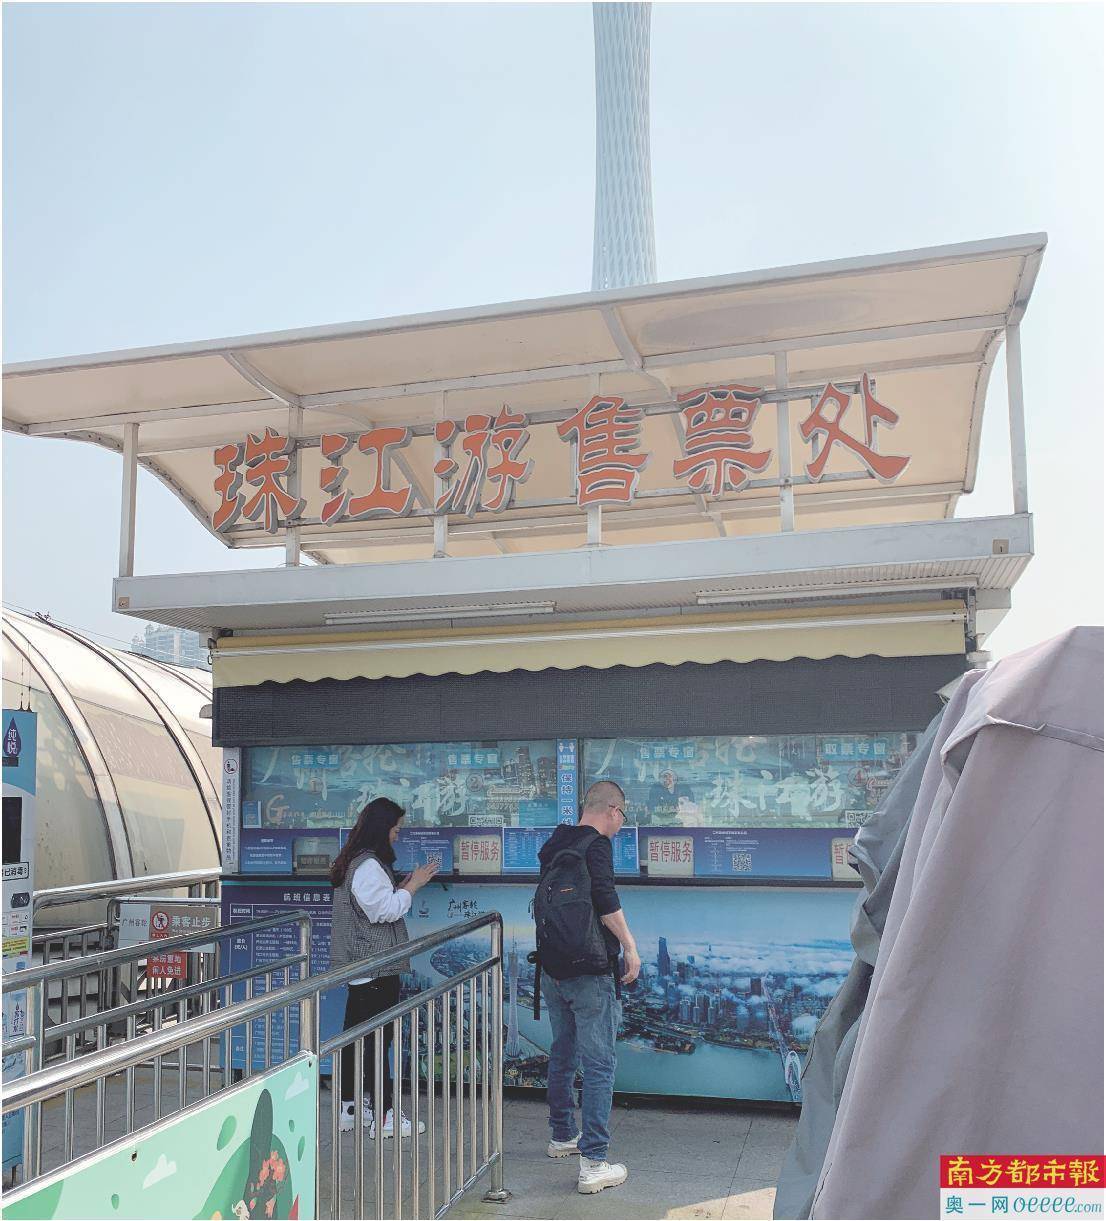 语音播报
:停靠时间长、解说内容短? 游客质疑珠江夜游变“搭渡轮”